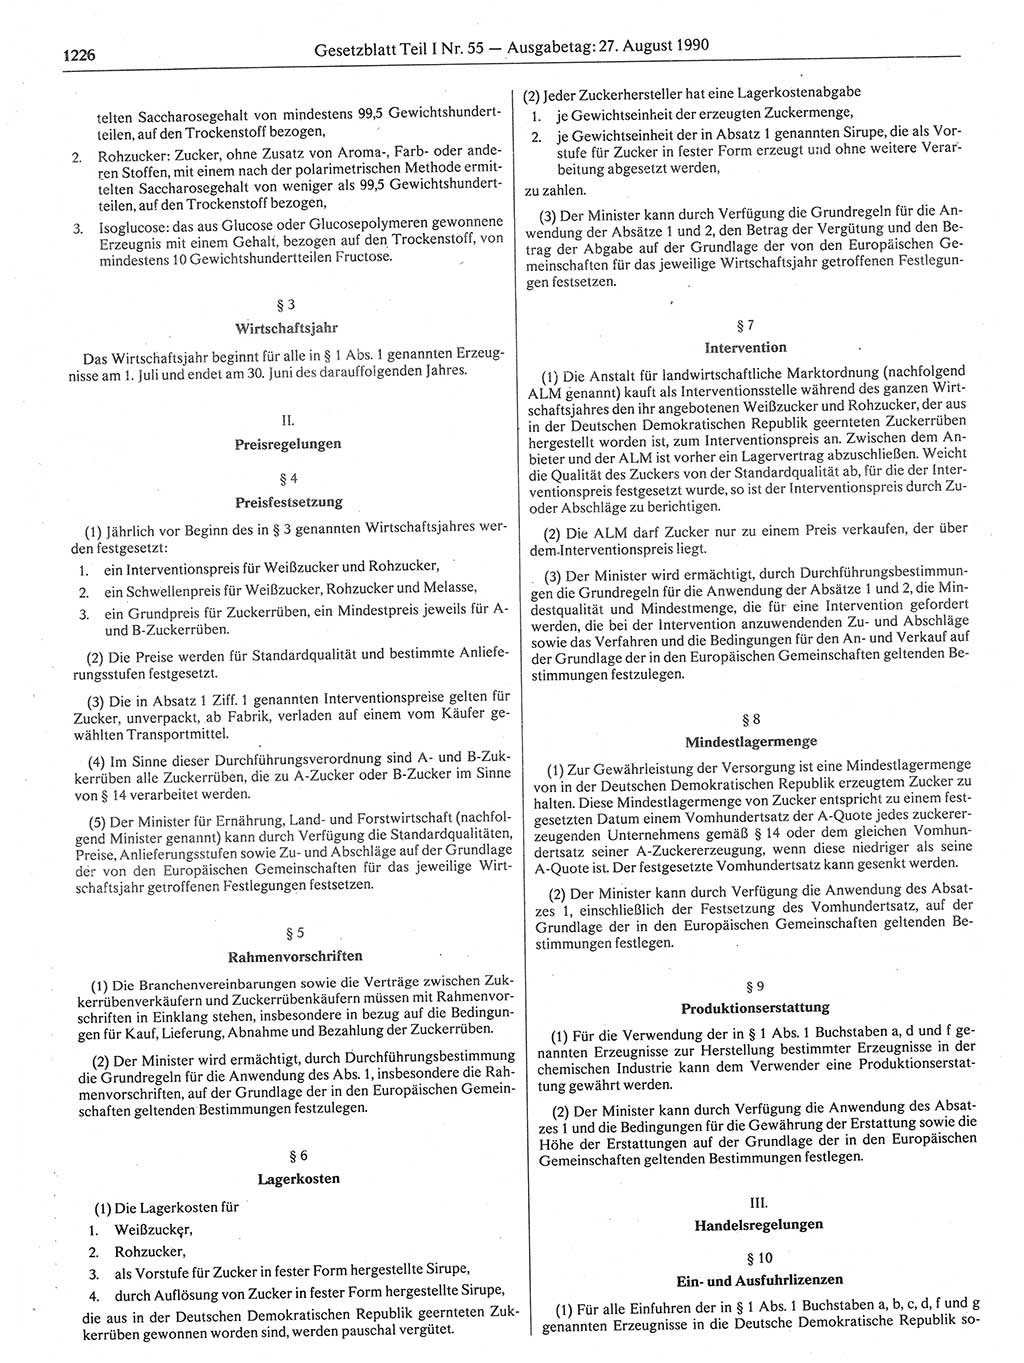 Gesetzblatt (GBl.) der Deutschen Demokratischen Republik (DDR) Teil Ⅰ 1990, Seite 1226 (GBl. DDR Ⅰ 1990, S. 1226)